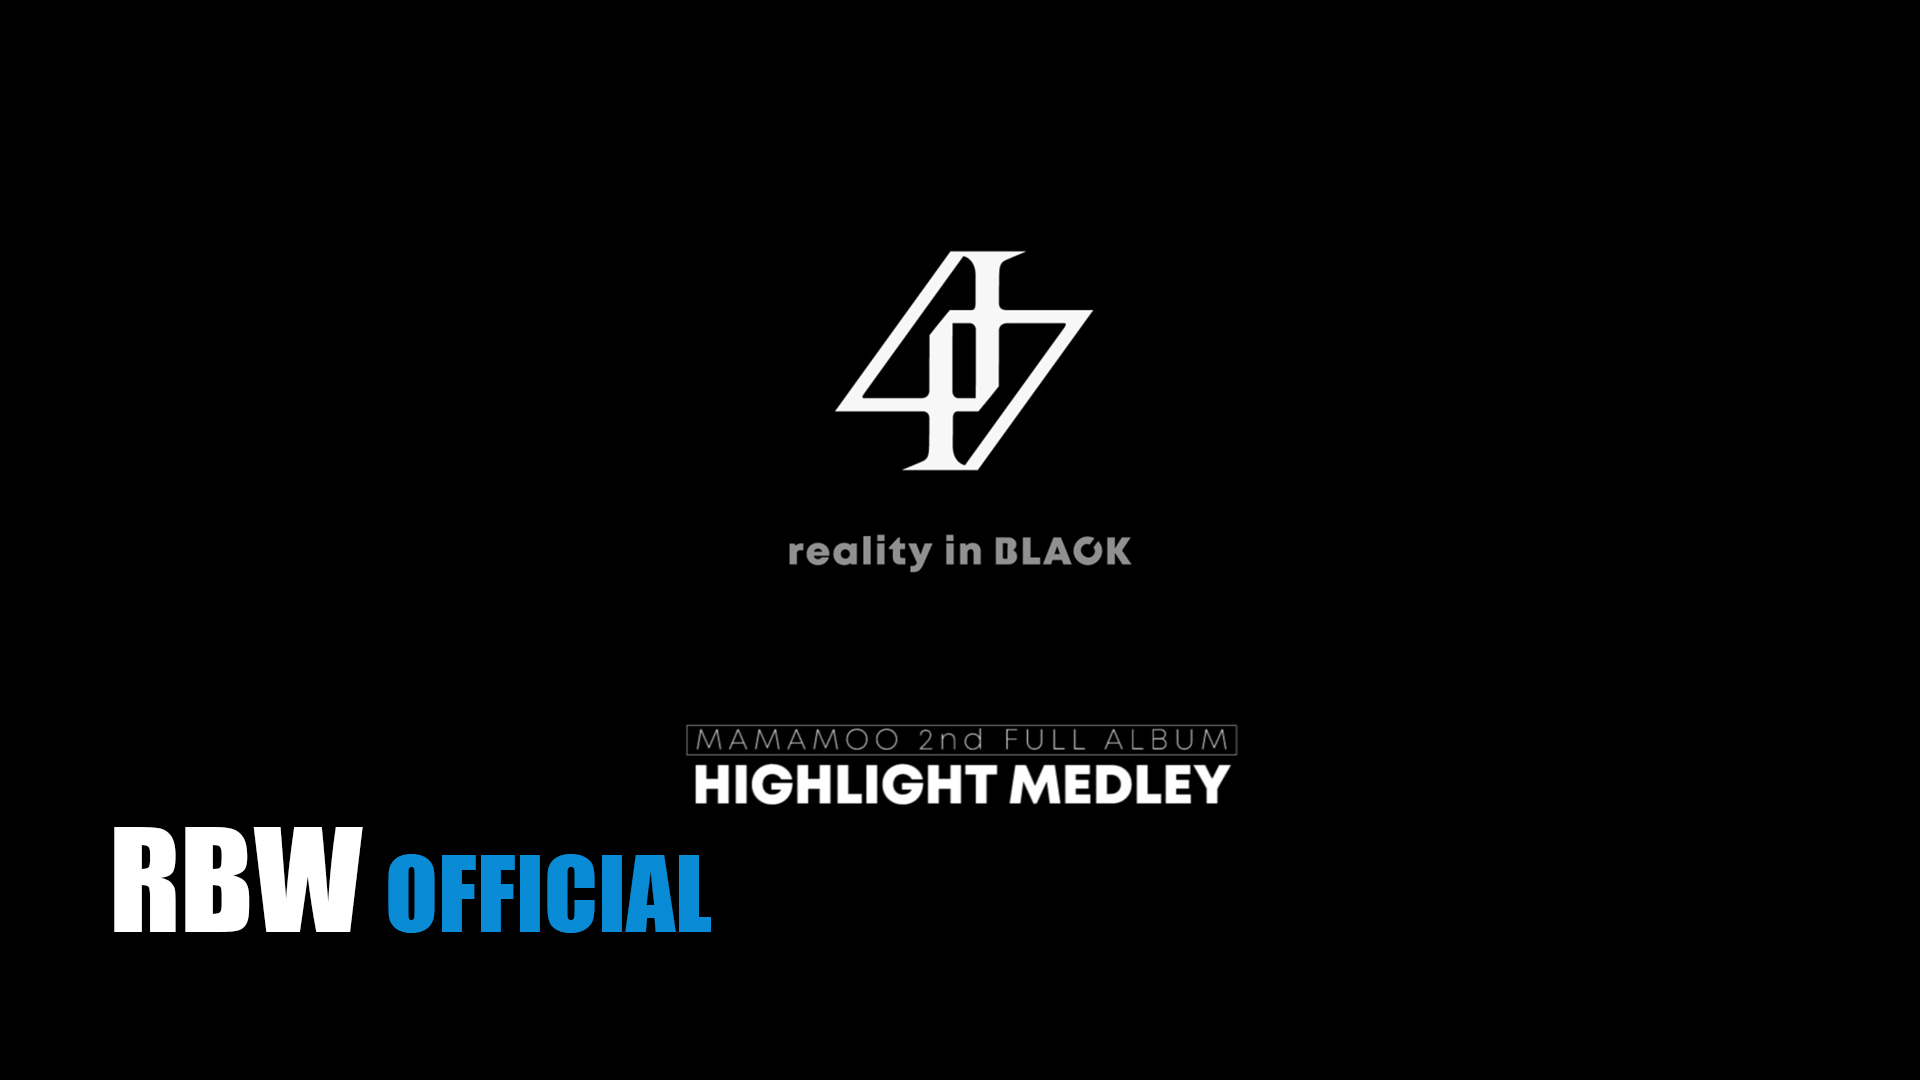 [HighLight] 'reality in BLACK' HIGHLIGHT MEDLEY